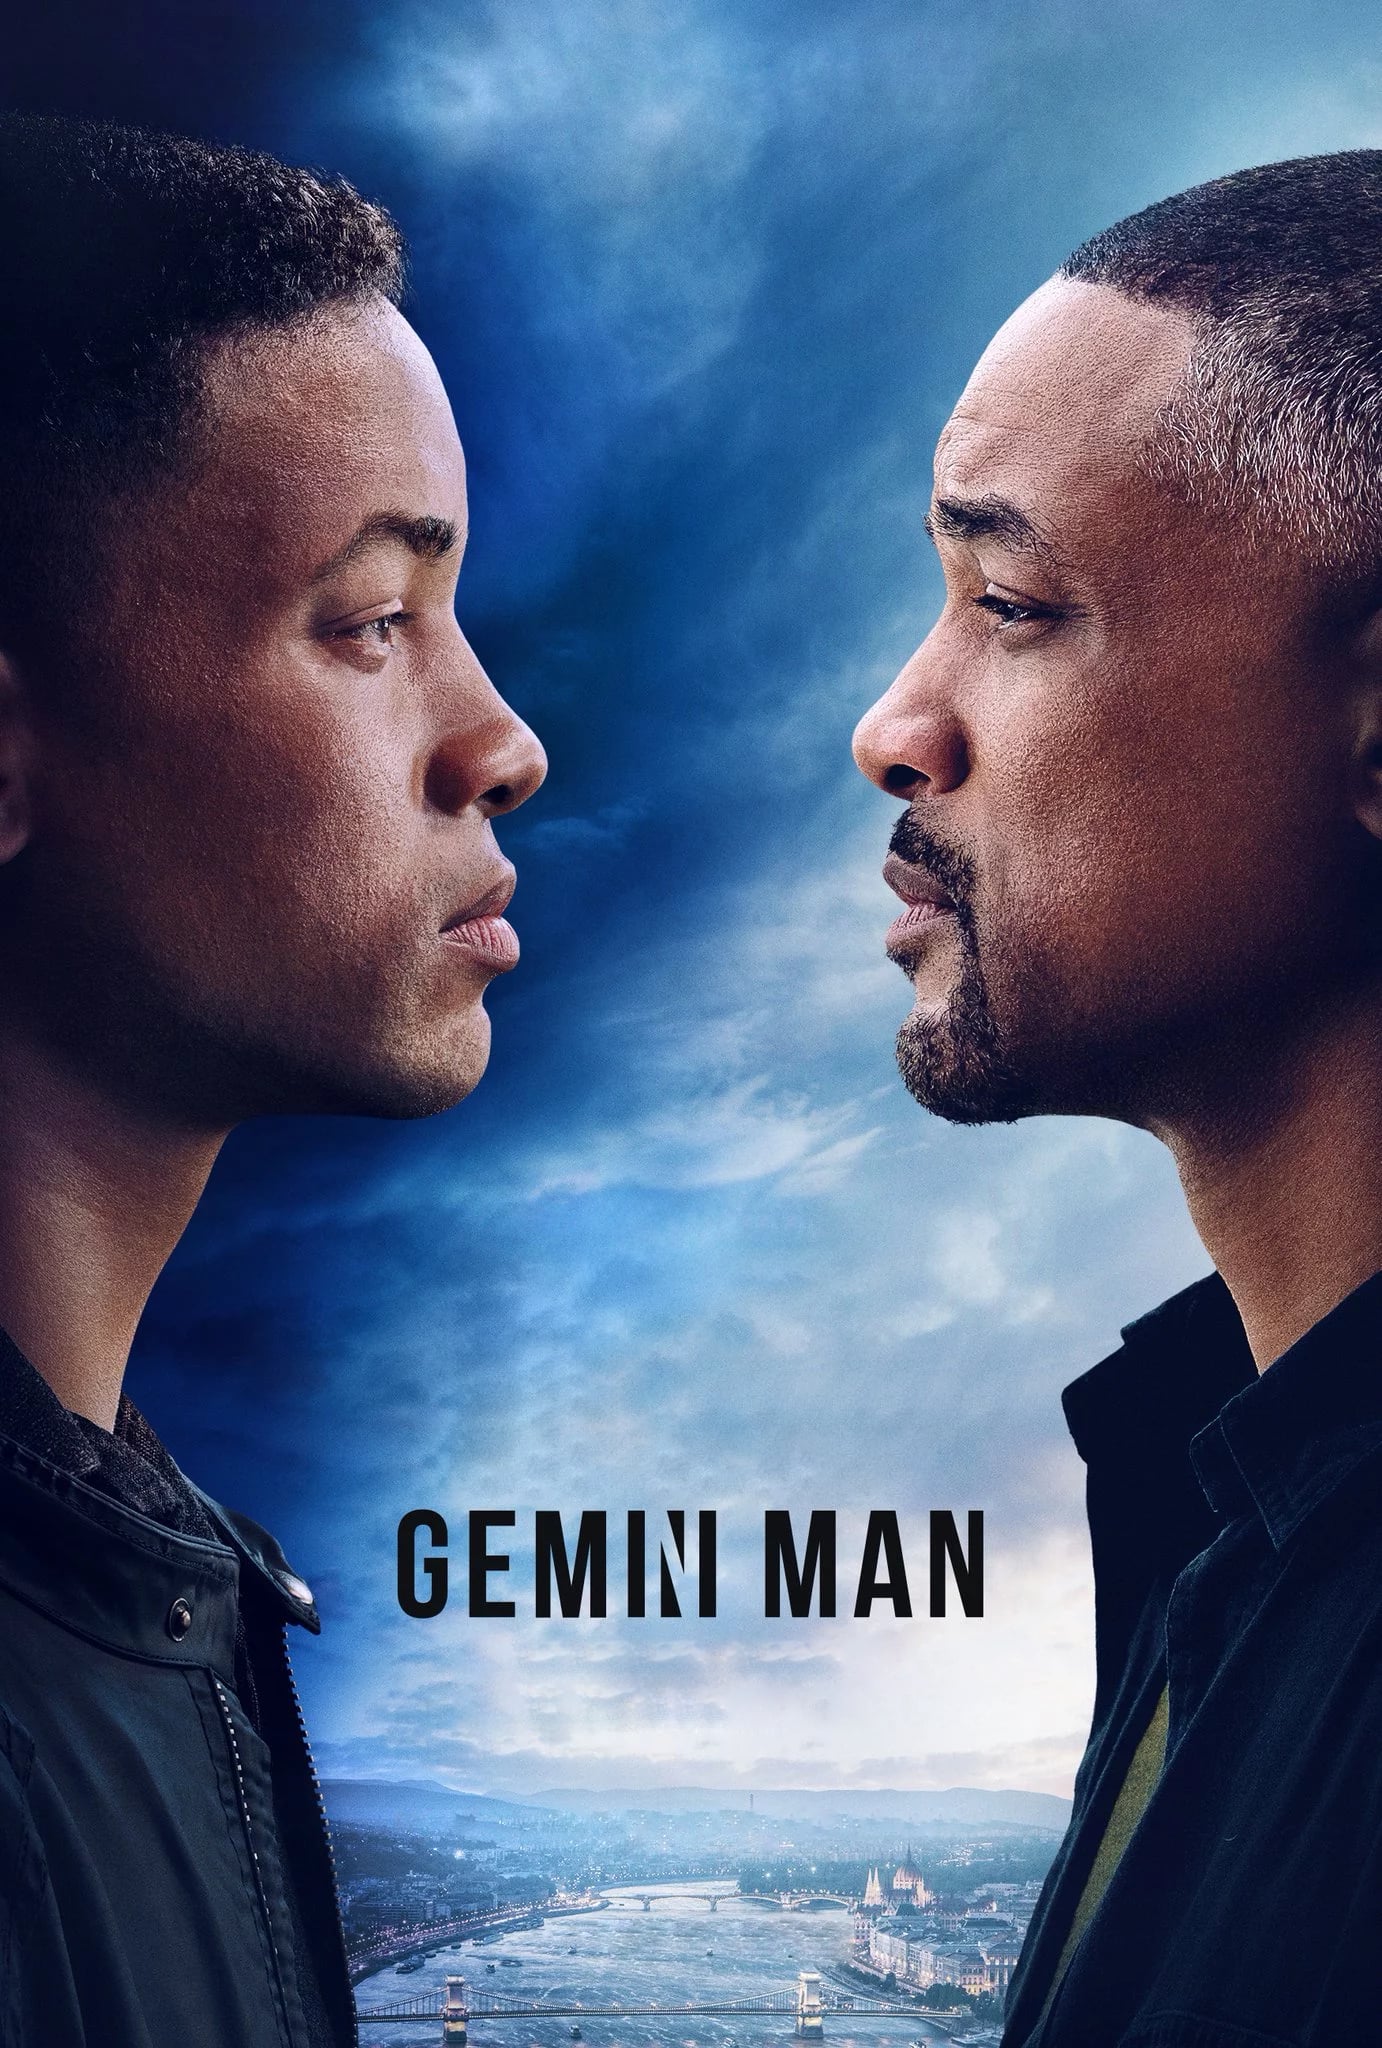 Gemini Man (2019) Official Trailer #1